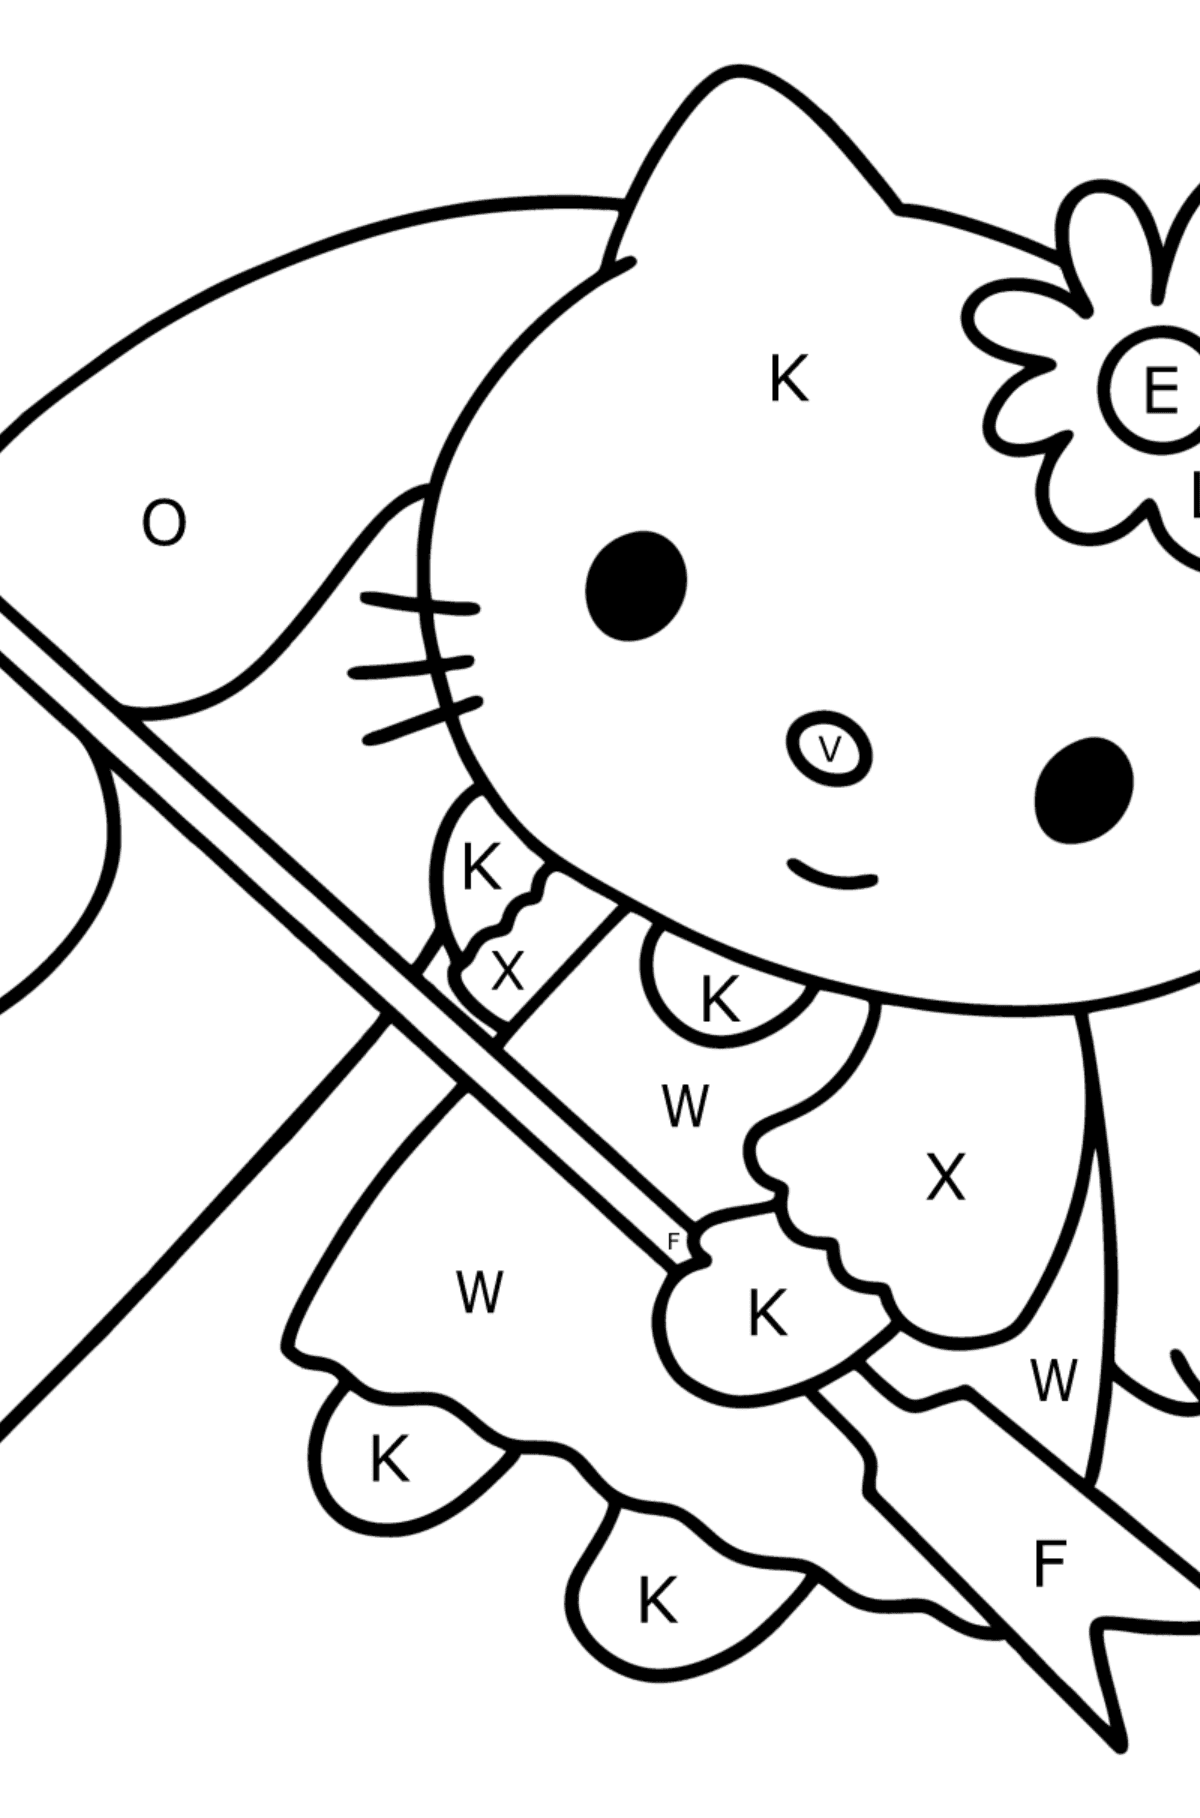 Desenho para colorir Hello Kitty do dia dos namorados - Colorir por Letras para Crianças